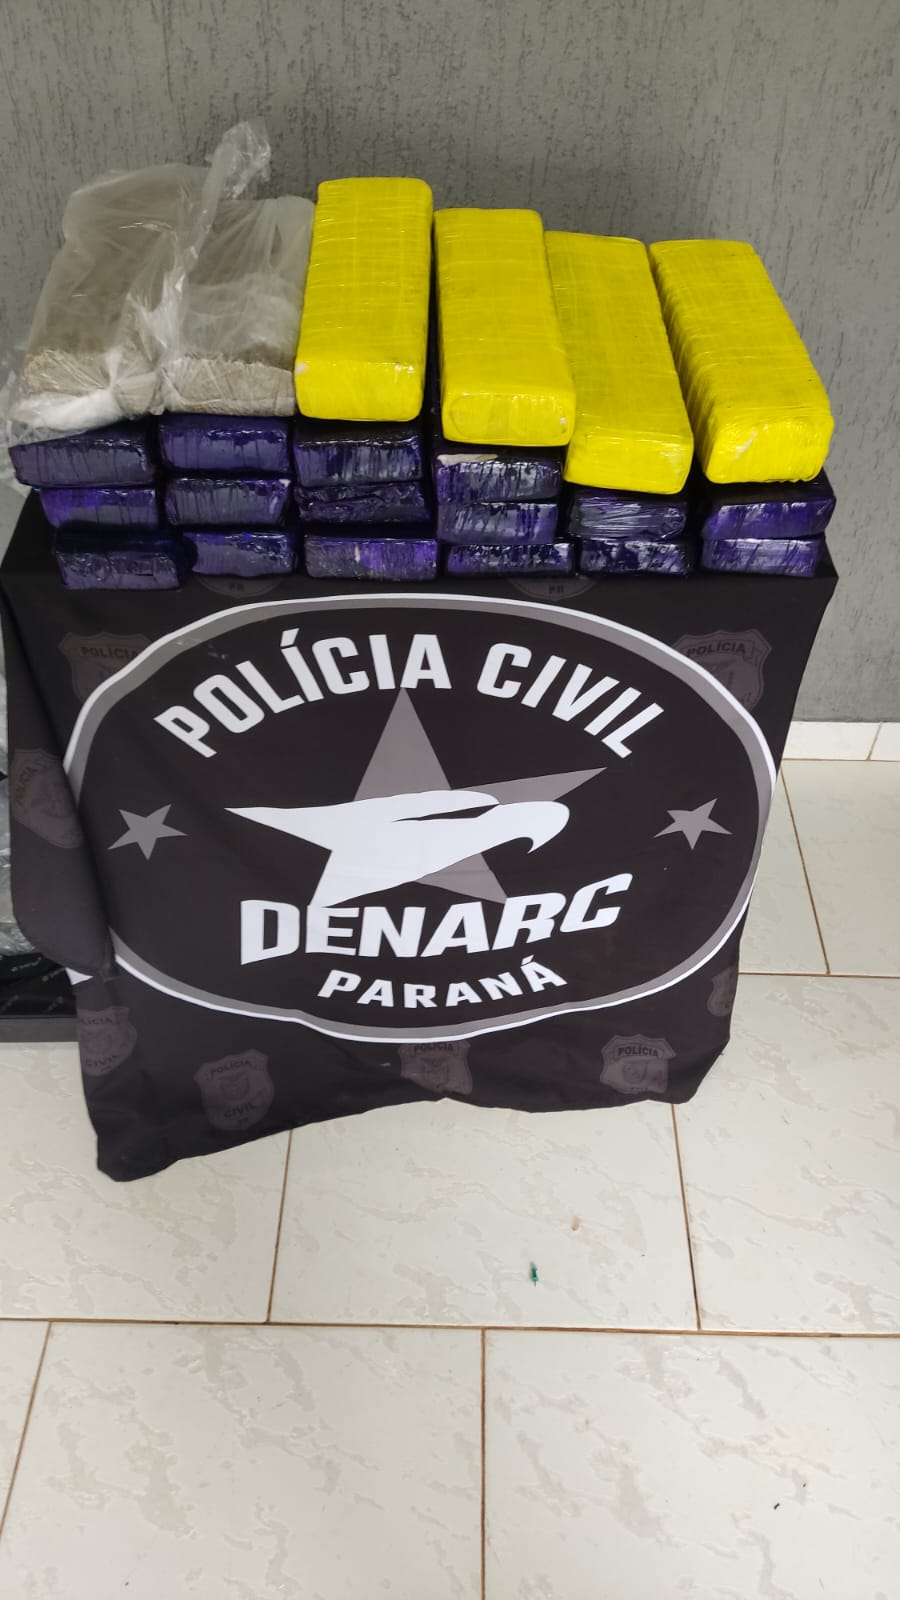 DENARC Apreende Drogas com Mulher Grávida de 7 Meses na BR 277, em Foz do Iguaçu: Operação Policial Resulta em Prisão por Tráfico de Drogas